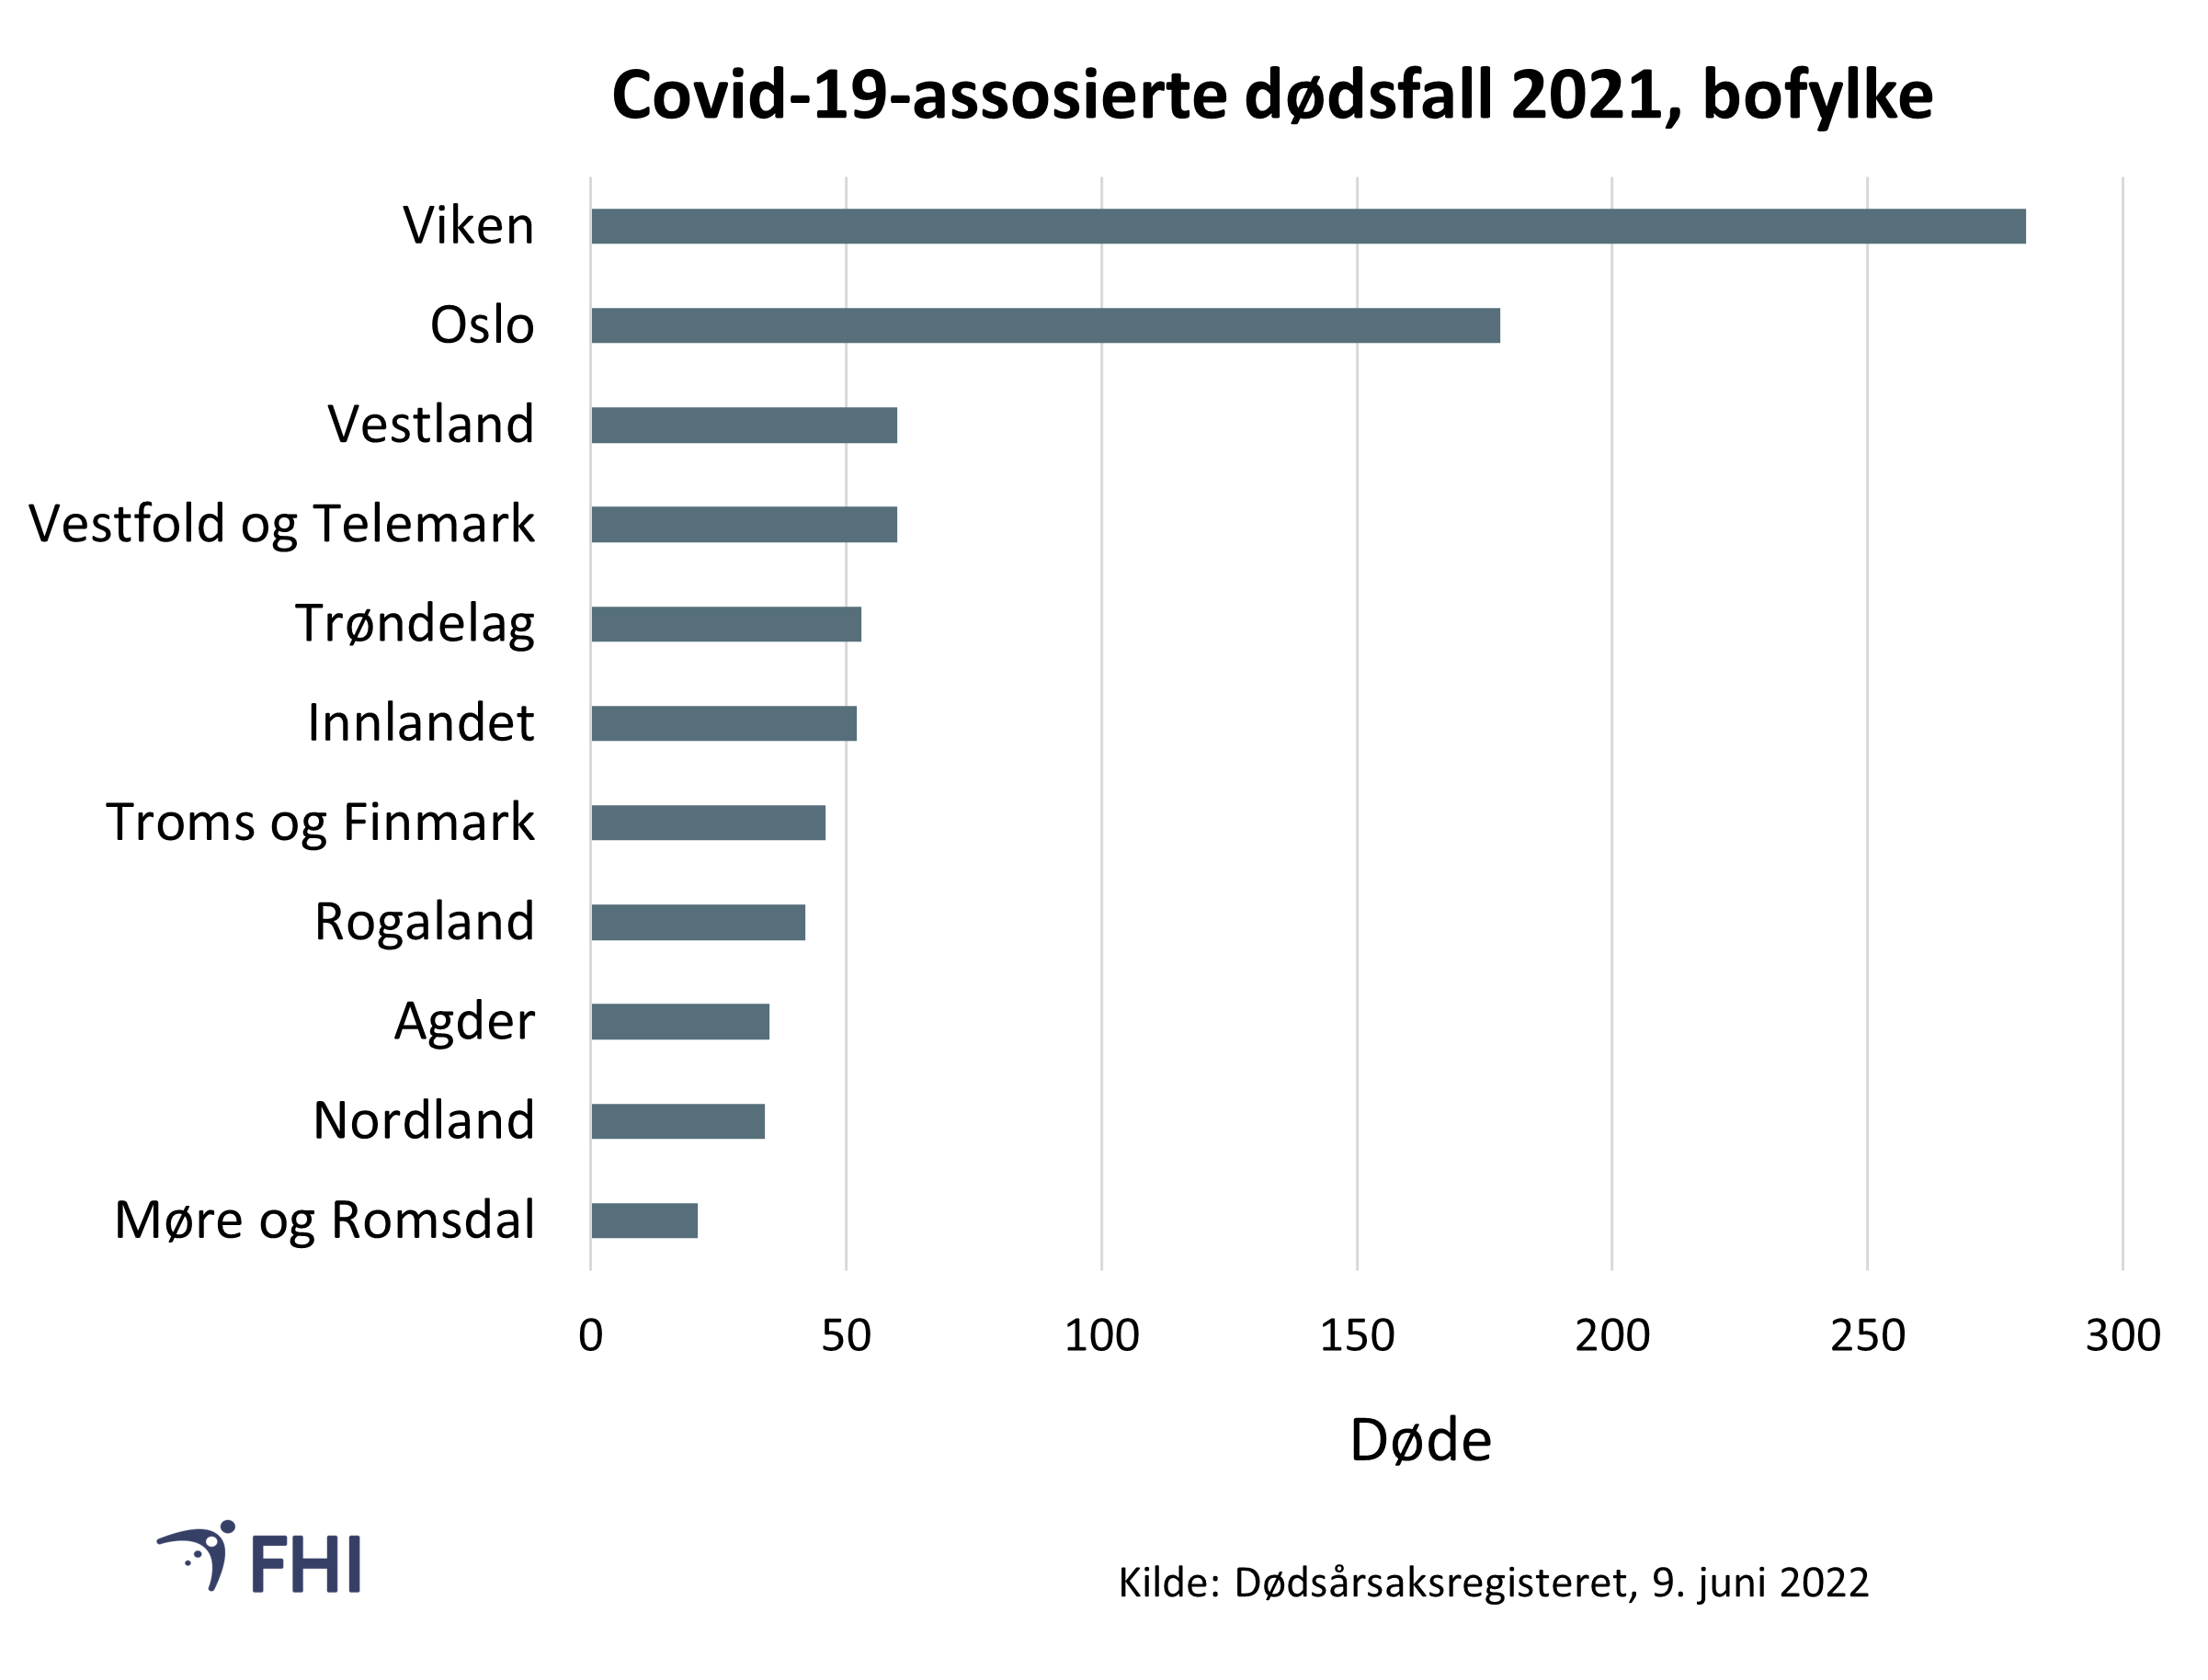 Figur 2: Andel covid-19-assosierte dødsfall i 2021 fordelt på fylke hos bosatte. 